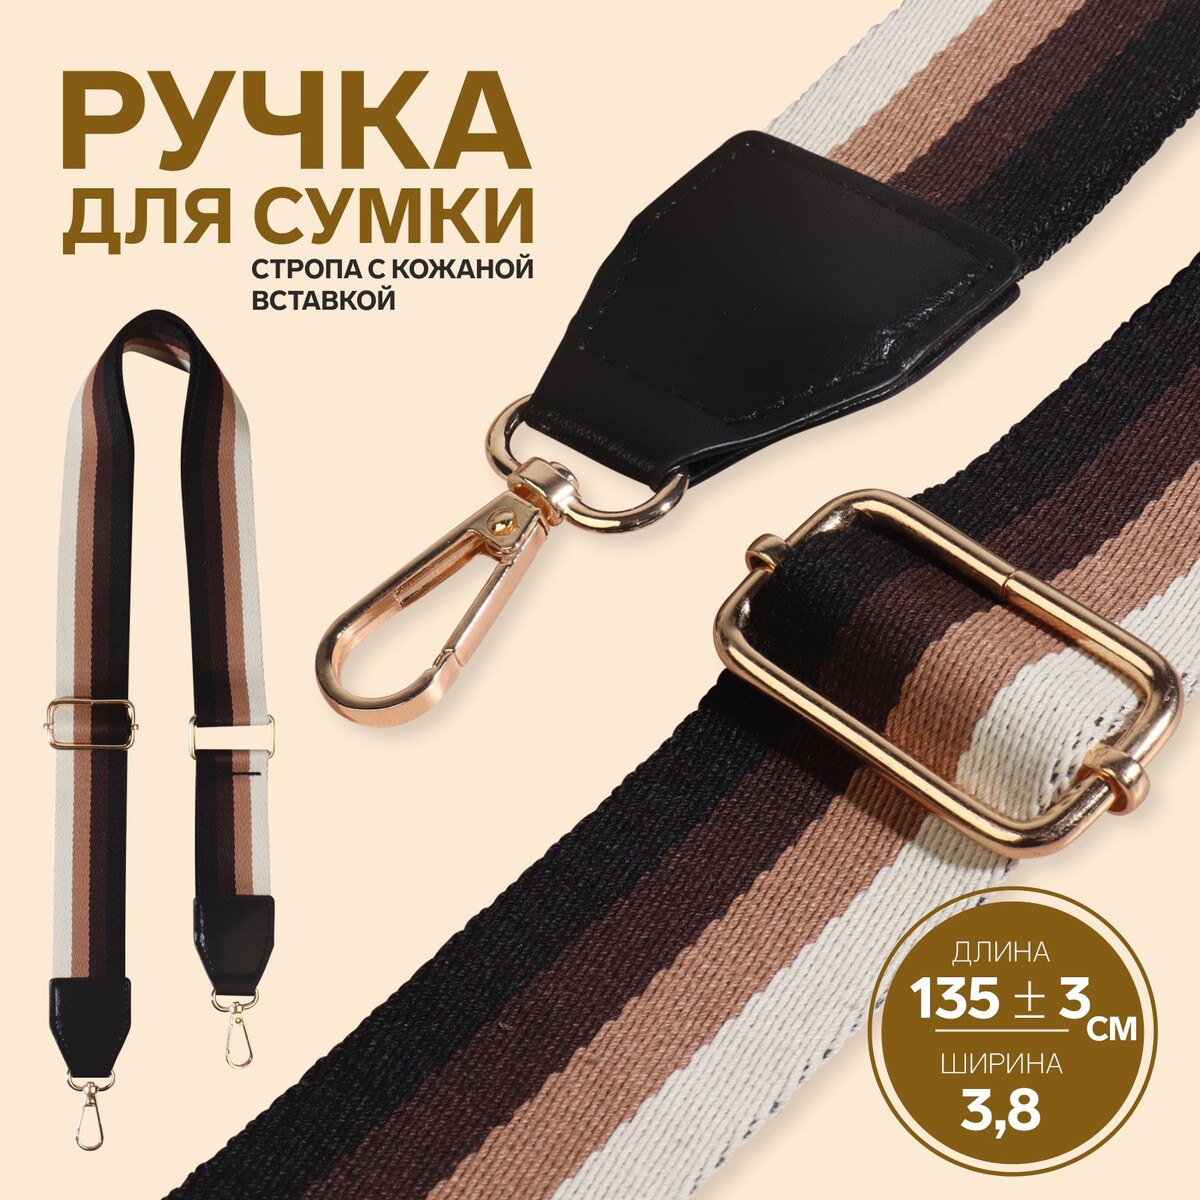 Ручка для сумки, стропа с кожаной вставкой, 139 ± 3 × 3,8 см, цвет черный/коричневый/песочный/золотой набор аппликаторов для теней с кистью двусторонние 5 шт 7 5 см цвет черный золотой